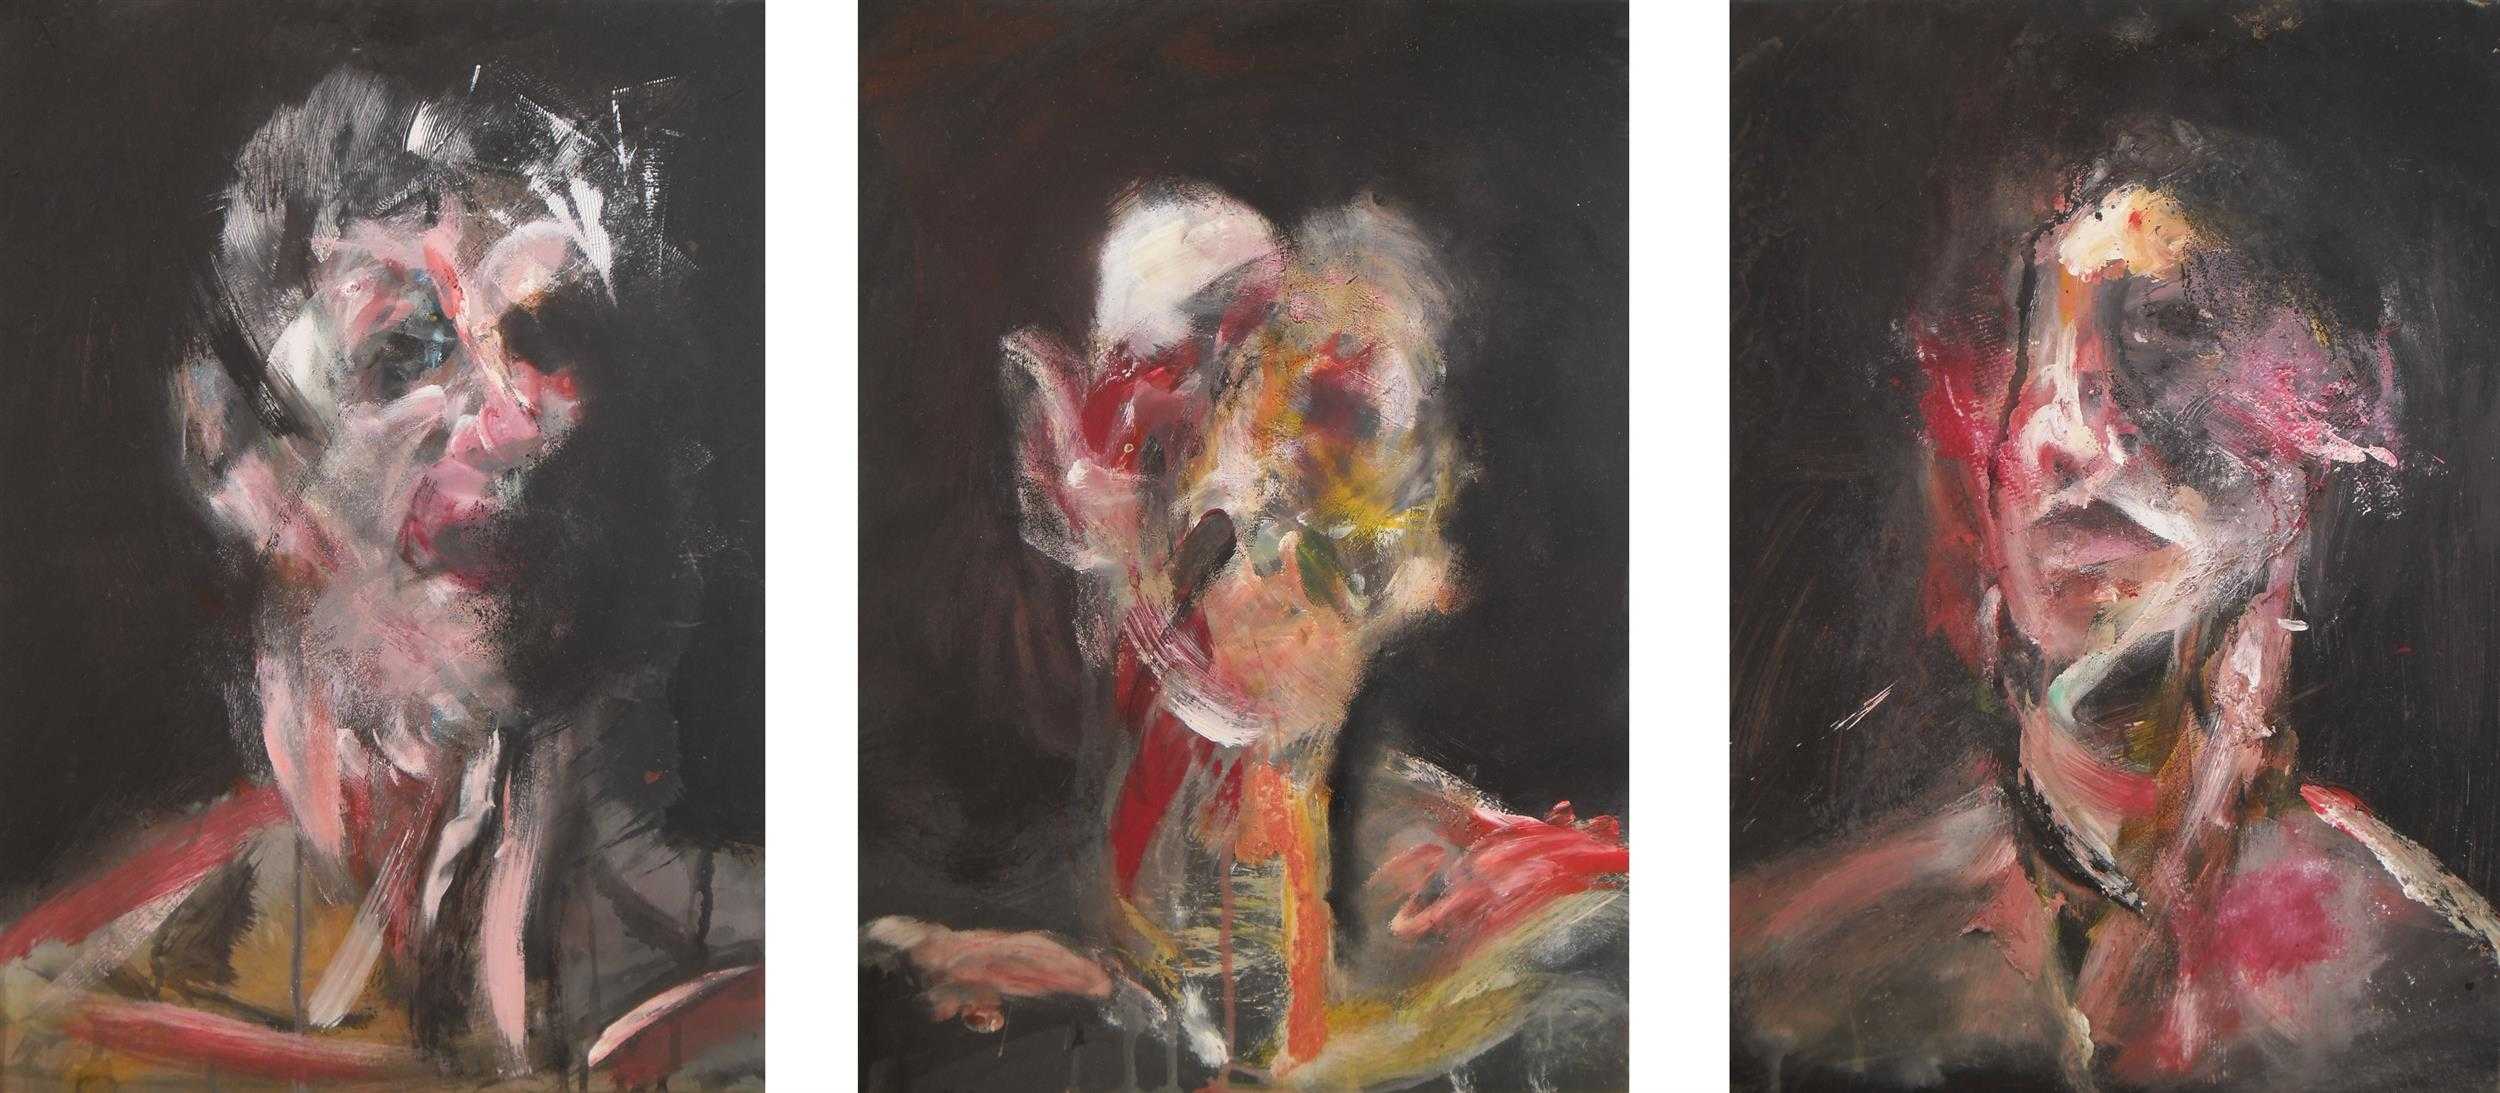 Картина Фигура с мясом от Фрэнсиса Бэкона - потрясающее изображение, на котором художник прекрасно передал эмоции и чувства с помощью красок и формы.